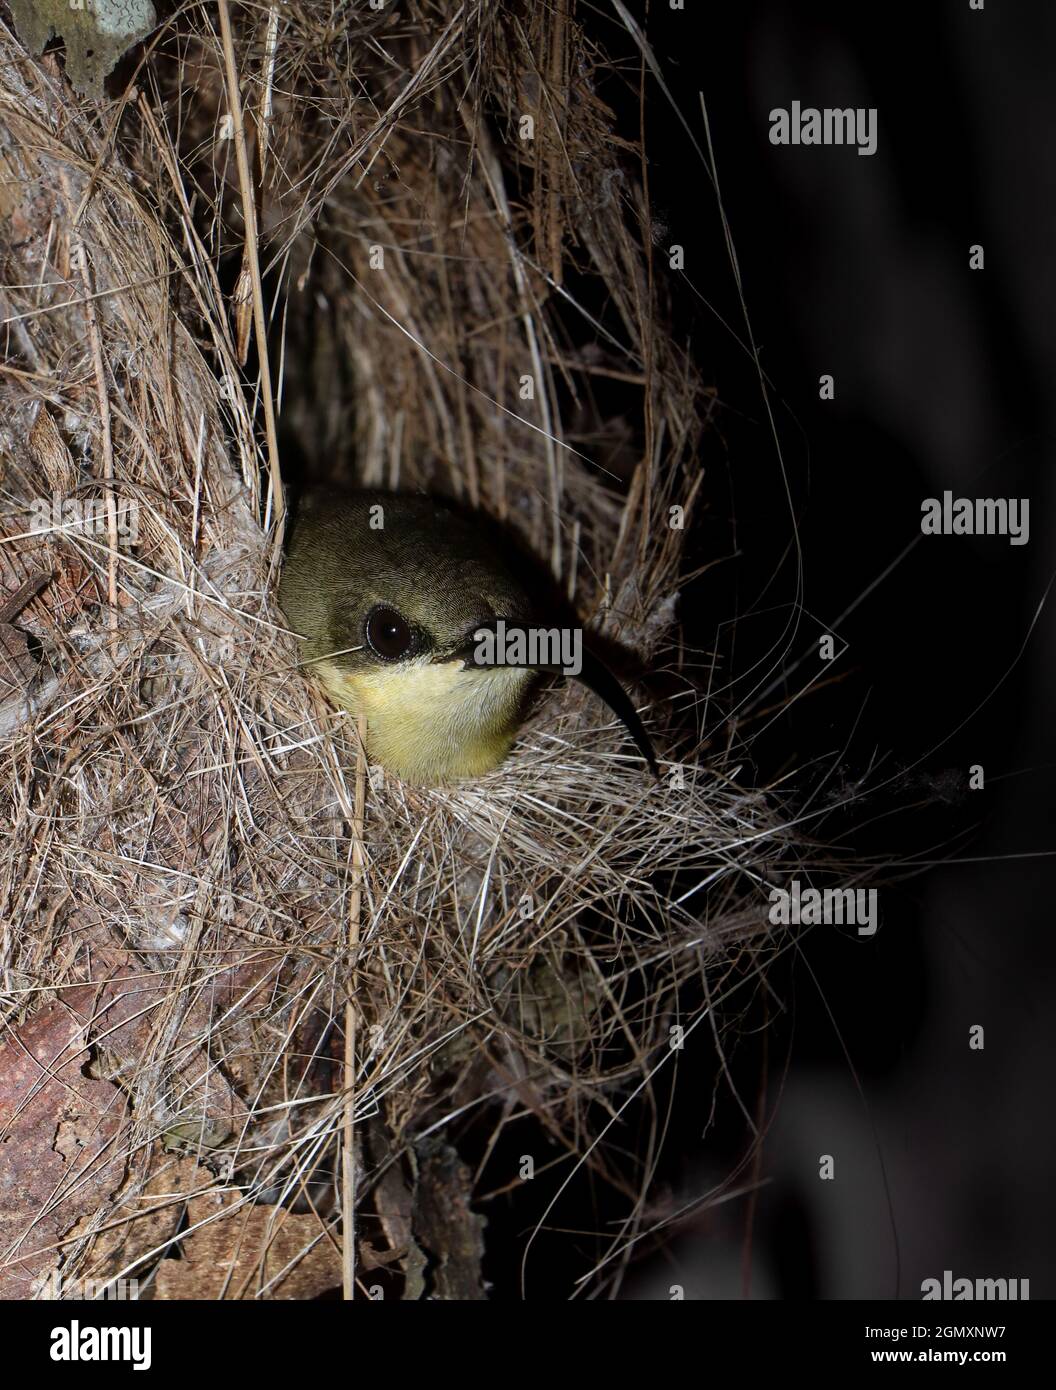 una ave de sol de cobre hembra con plumas de amarillo dorado y café y pico largo curvado sentado dentro de su pequeño nido tejido después de la puesta del sol Foto de stock